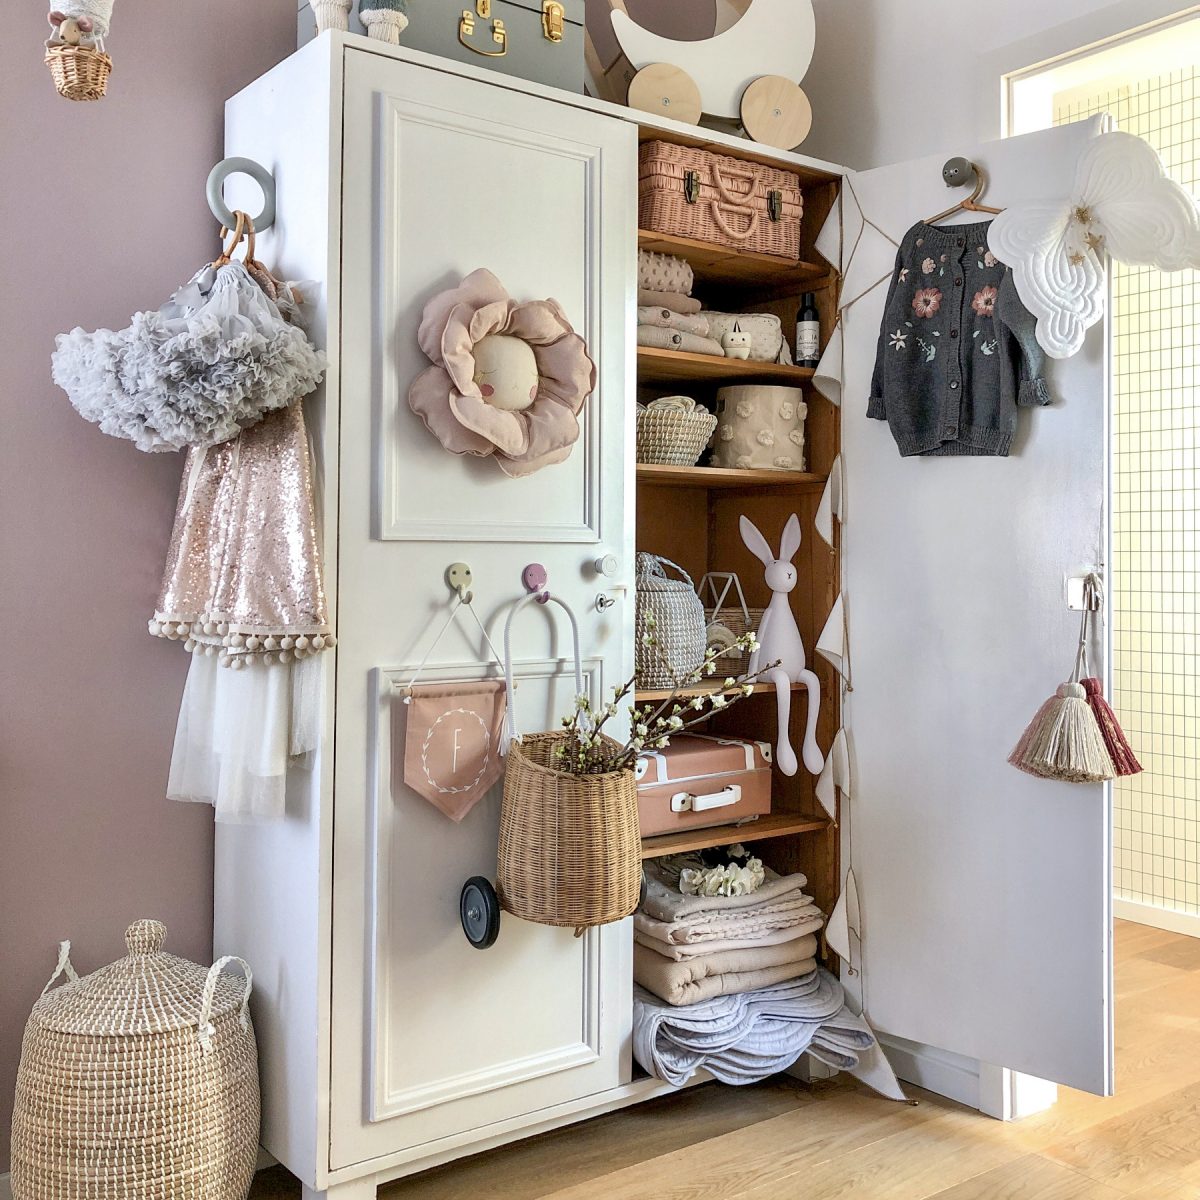 Instagram Kinderzimmer von Misstiptop: Kleiderschrank mit Deko & Accessoires